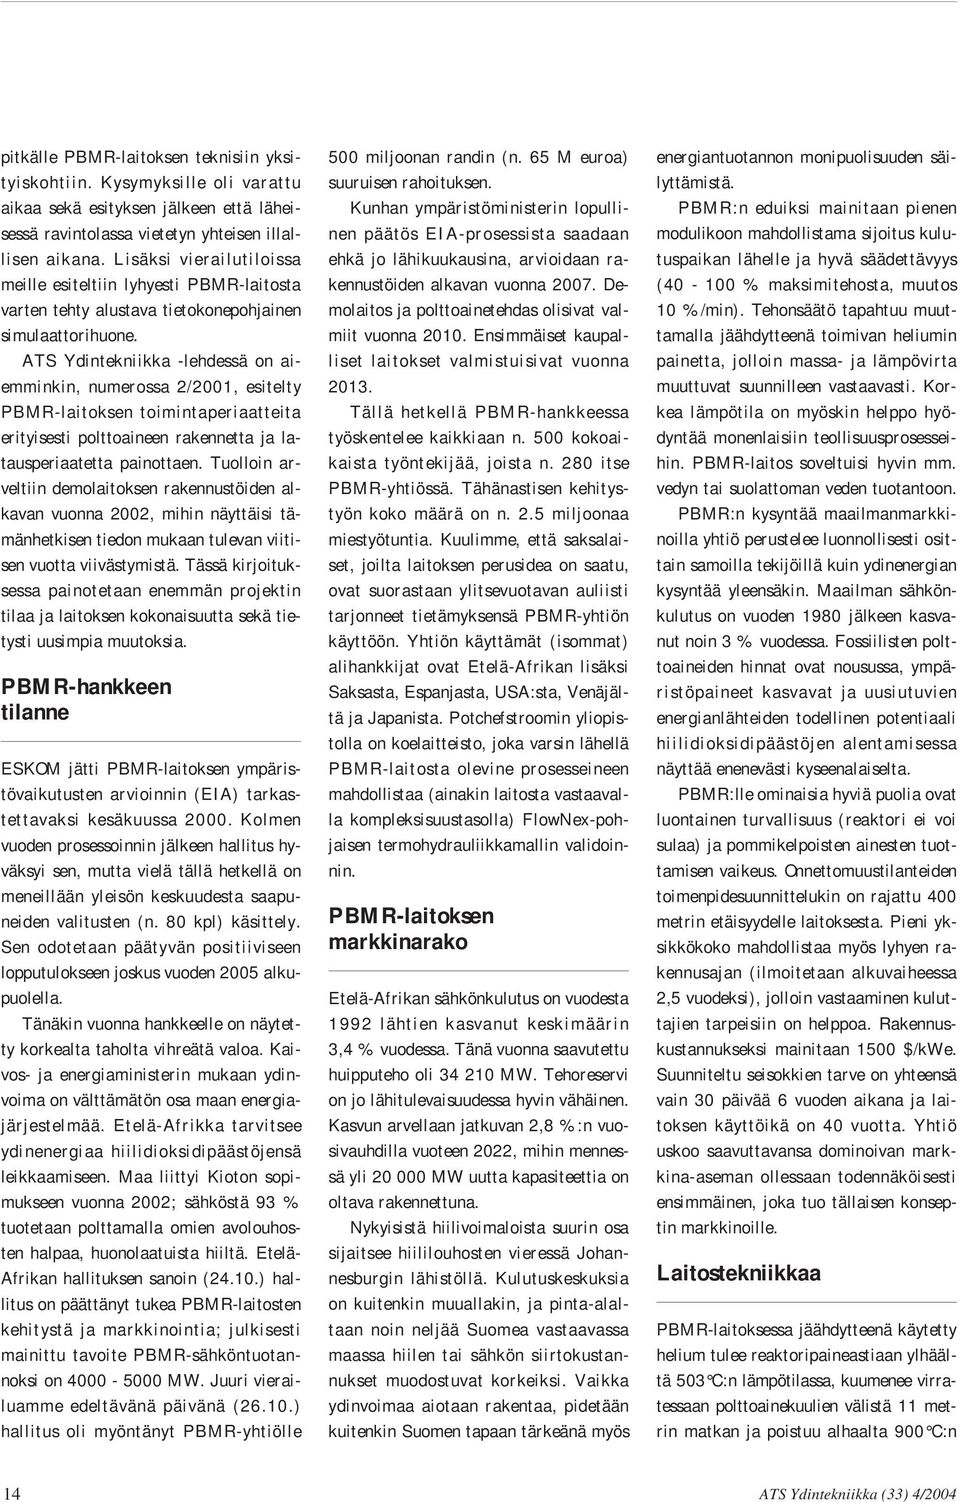 ATS Ydintekniikka -lehdessä on aiemminkin, numerossa 2/2001, esitelty PBMR-laitoksen toimintaperiaatteita erityisesti polttoaineen rakennetta ja latausperiaatetta painottaen.